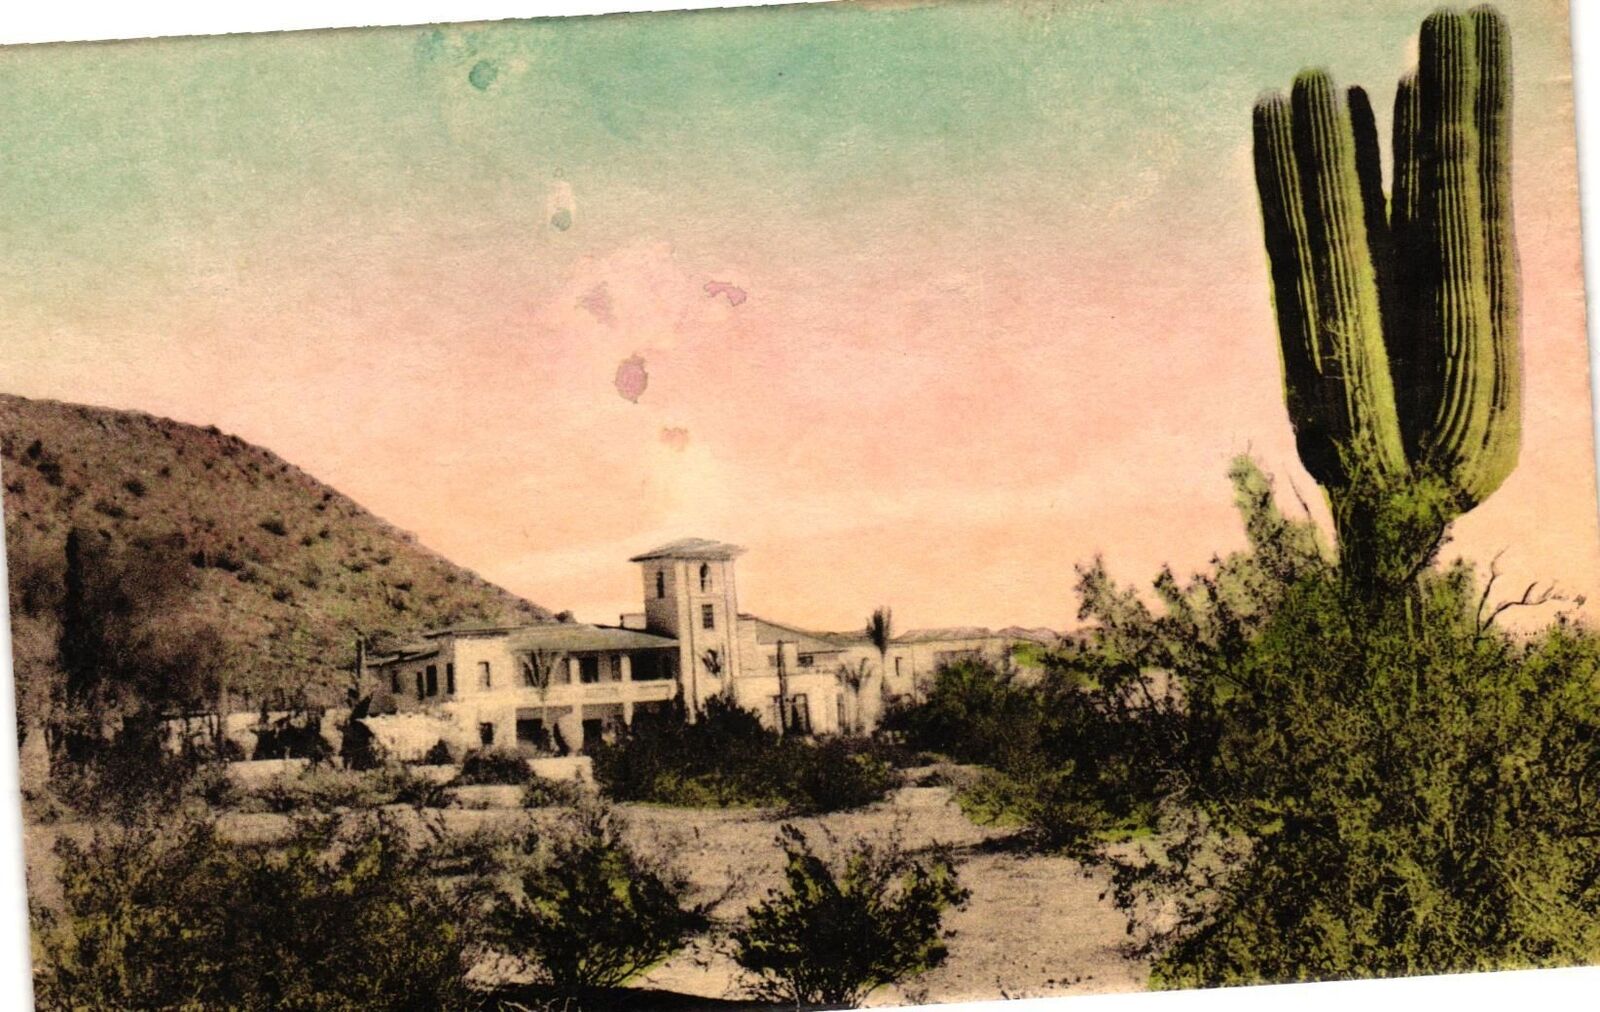 Vintage Postcard- MAIN BUILDING, PARADISE INN, PHOENIX, AZ.